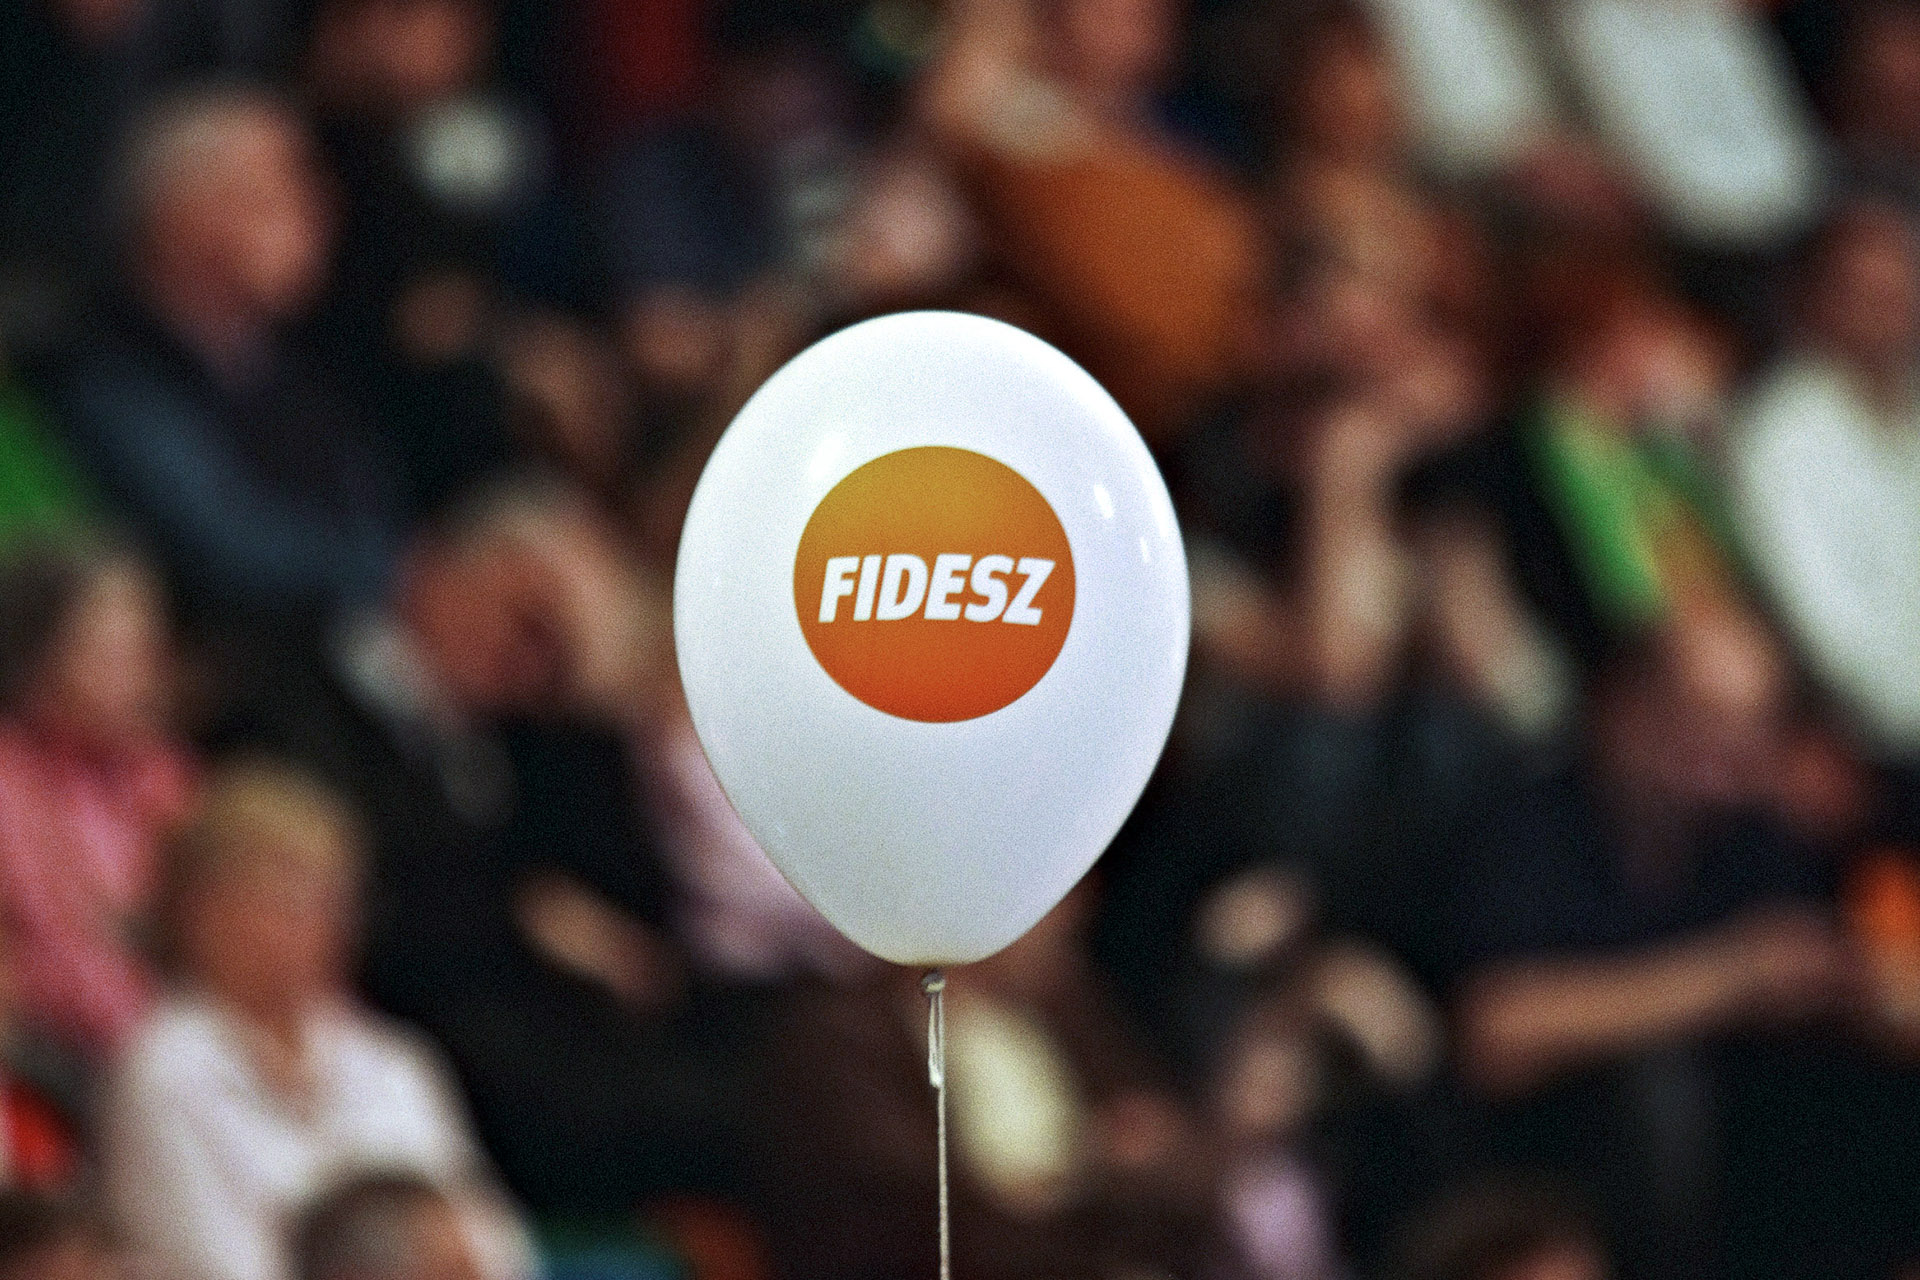 Hétvégén tisztújít a Fidesz